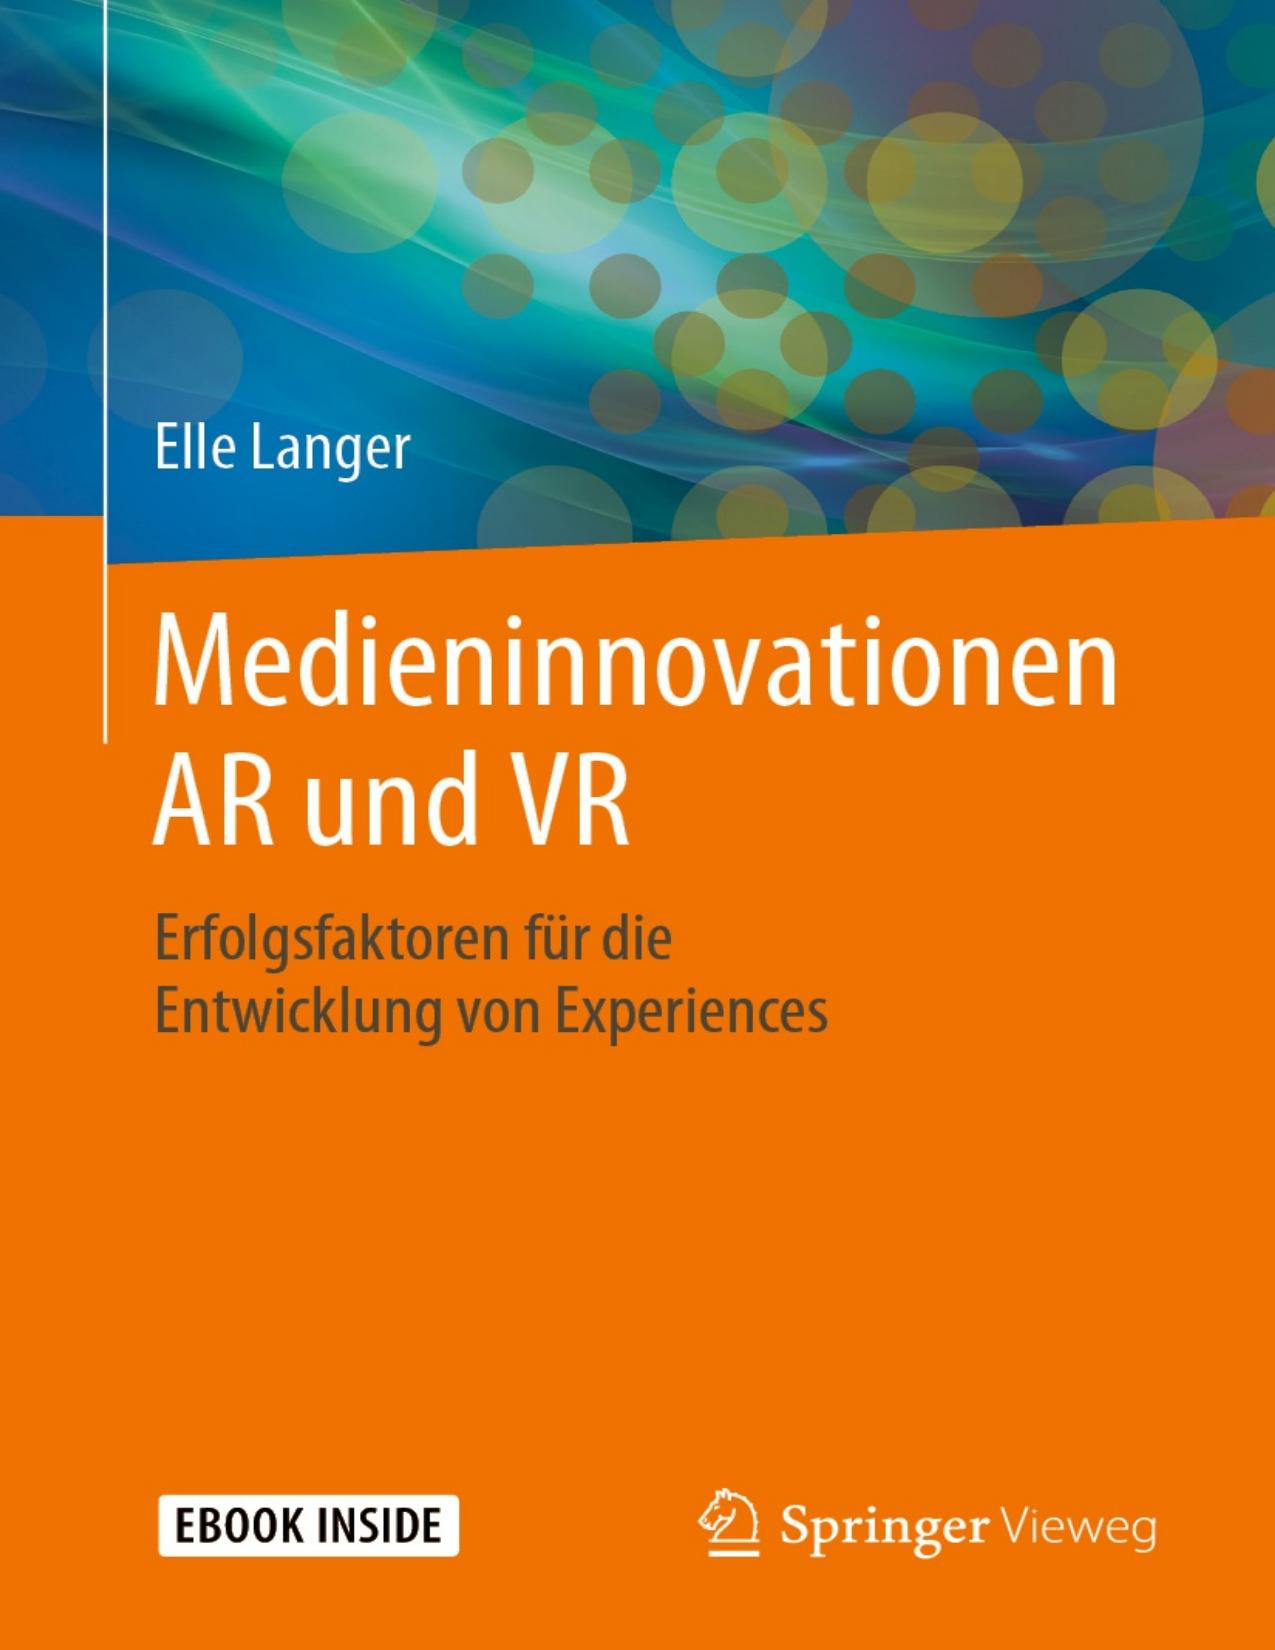 Medieninnovationen AR und VR: Erfolgsfaktoren für die Entwicklung von Experiences